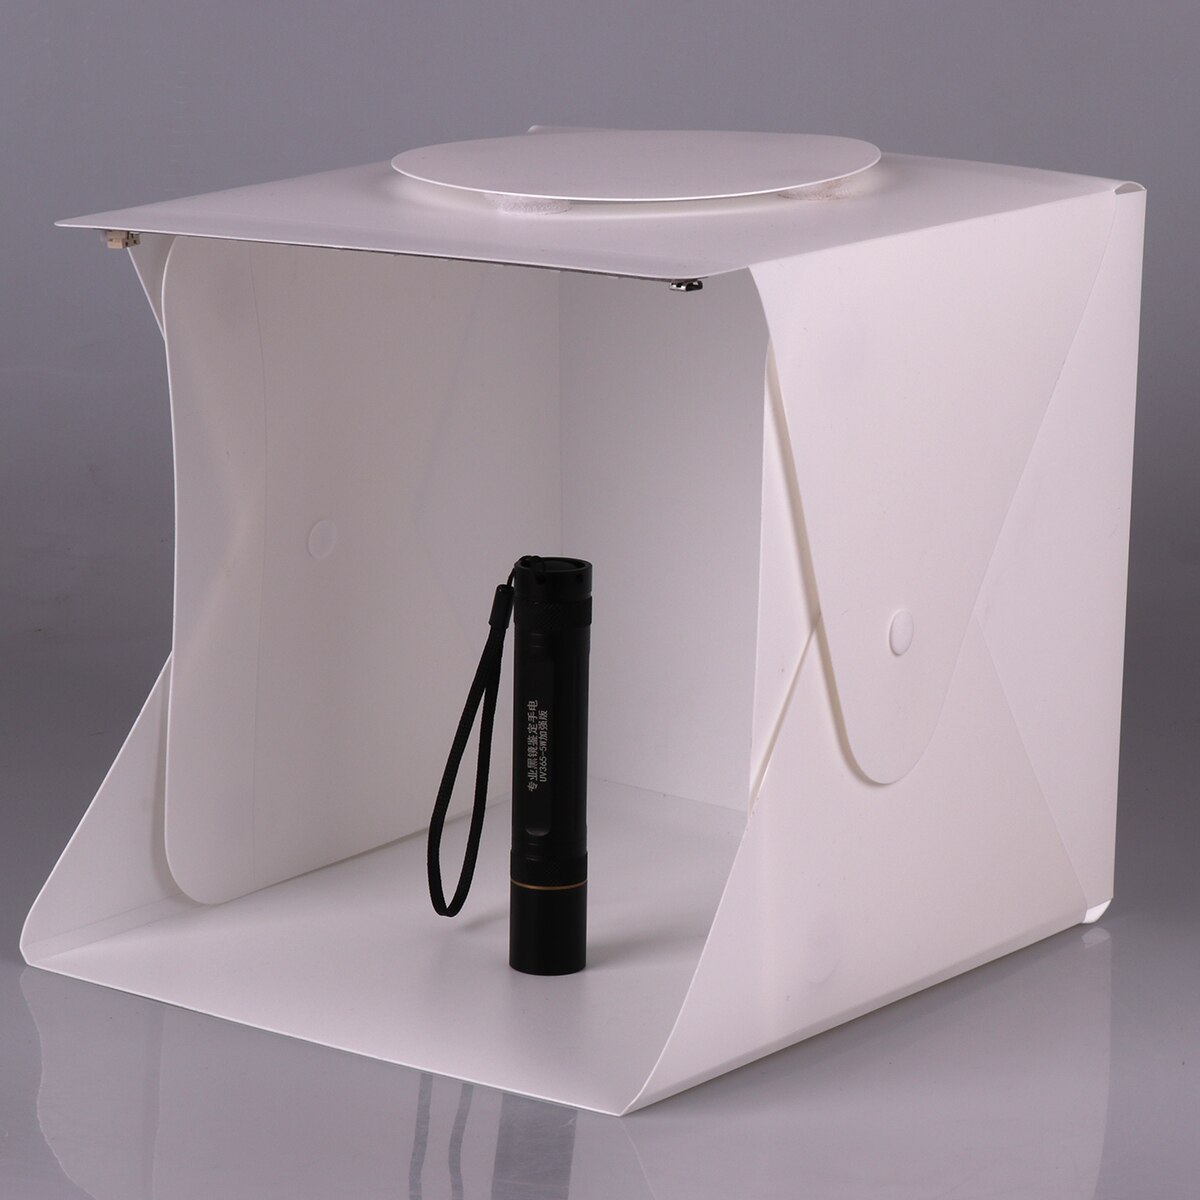 SOONHUA Mini Vouwen Dimmer Photo Studio Light Box Schieten Tent Met Dual LED Strip Verlichting 6 Achtergronden Voor Fotografie